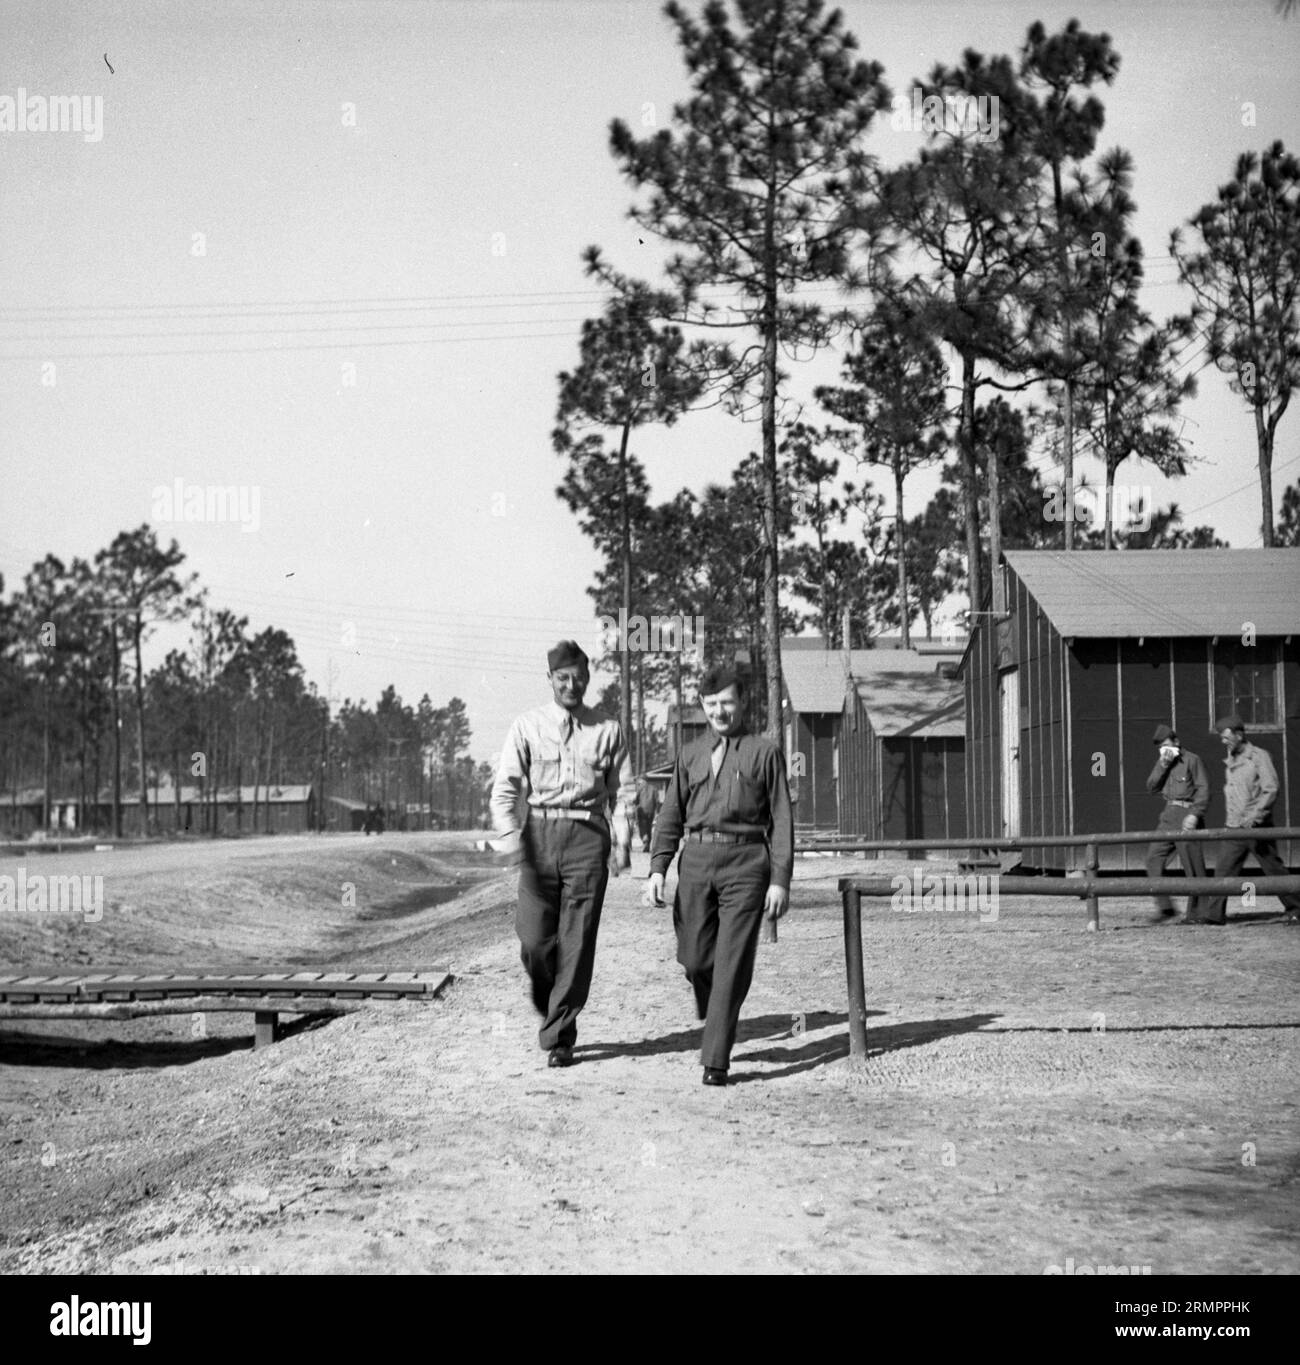 Soldaten, die im Lager spazieren. Mitglieder der 114. Infanteriedivision der US-Armee trainieren im Zweiten Weltkrieg gegen Deutschland in Europa. Stockfoto